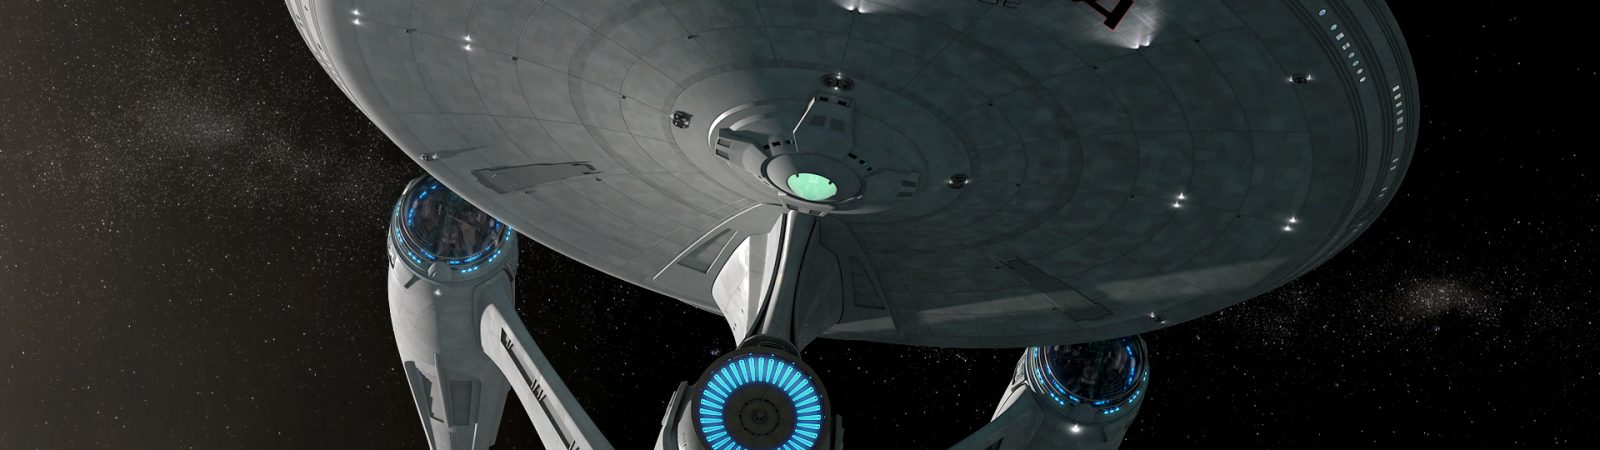 Enterprise-A update #11